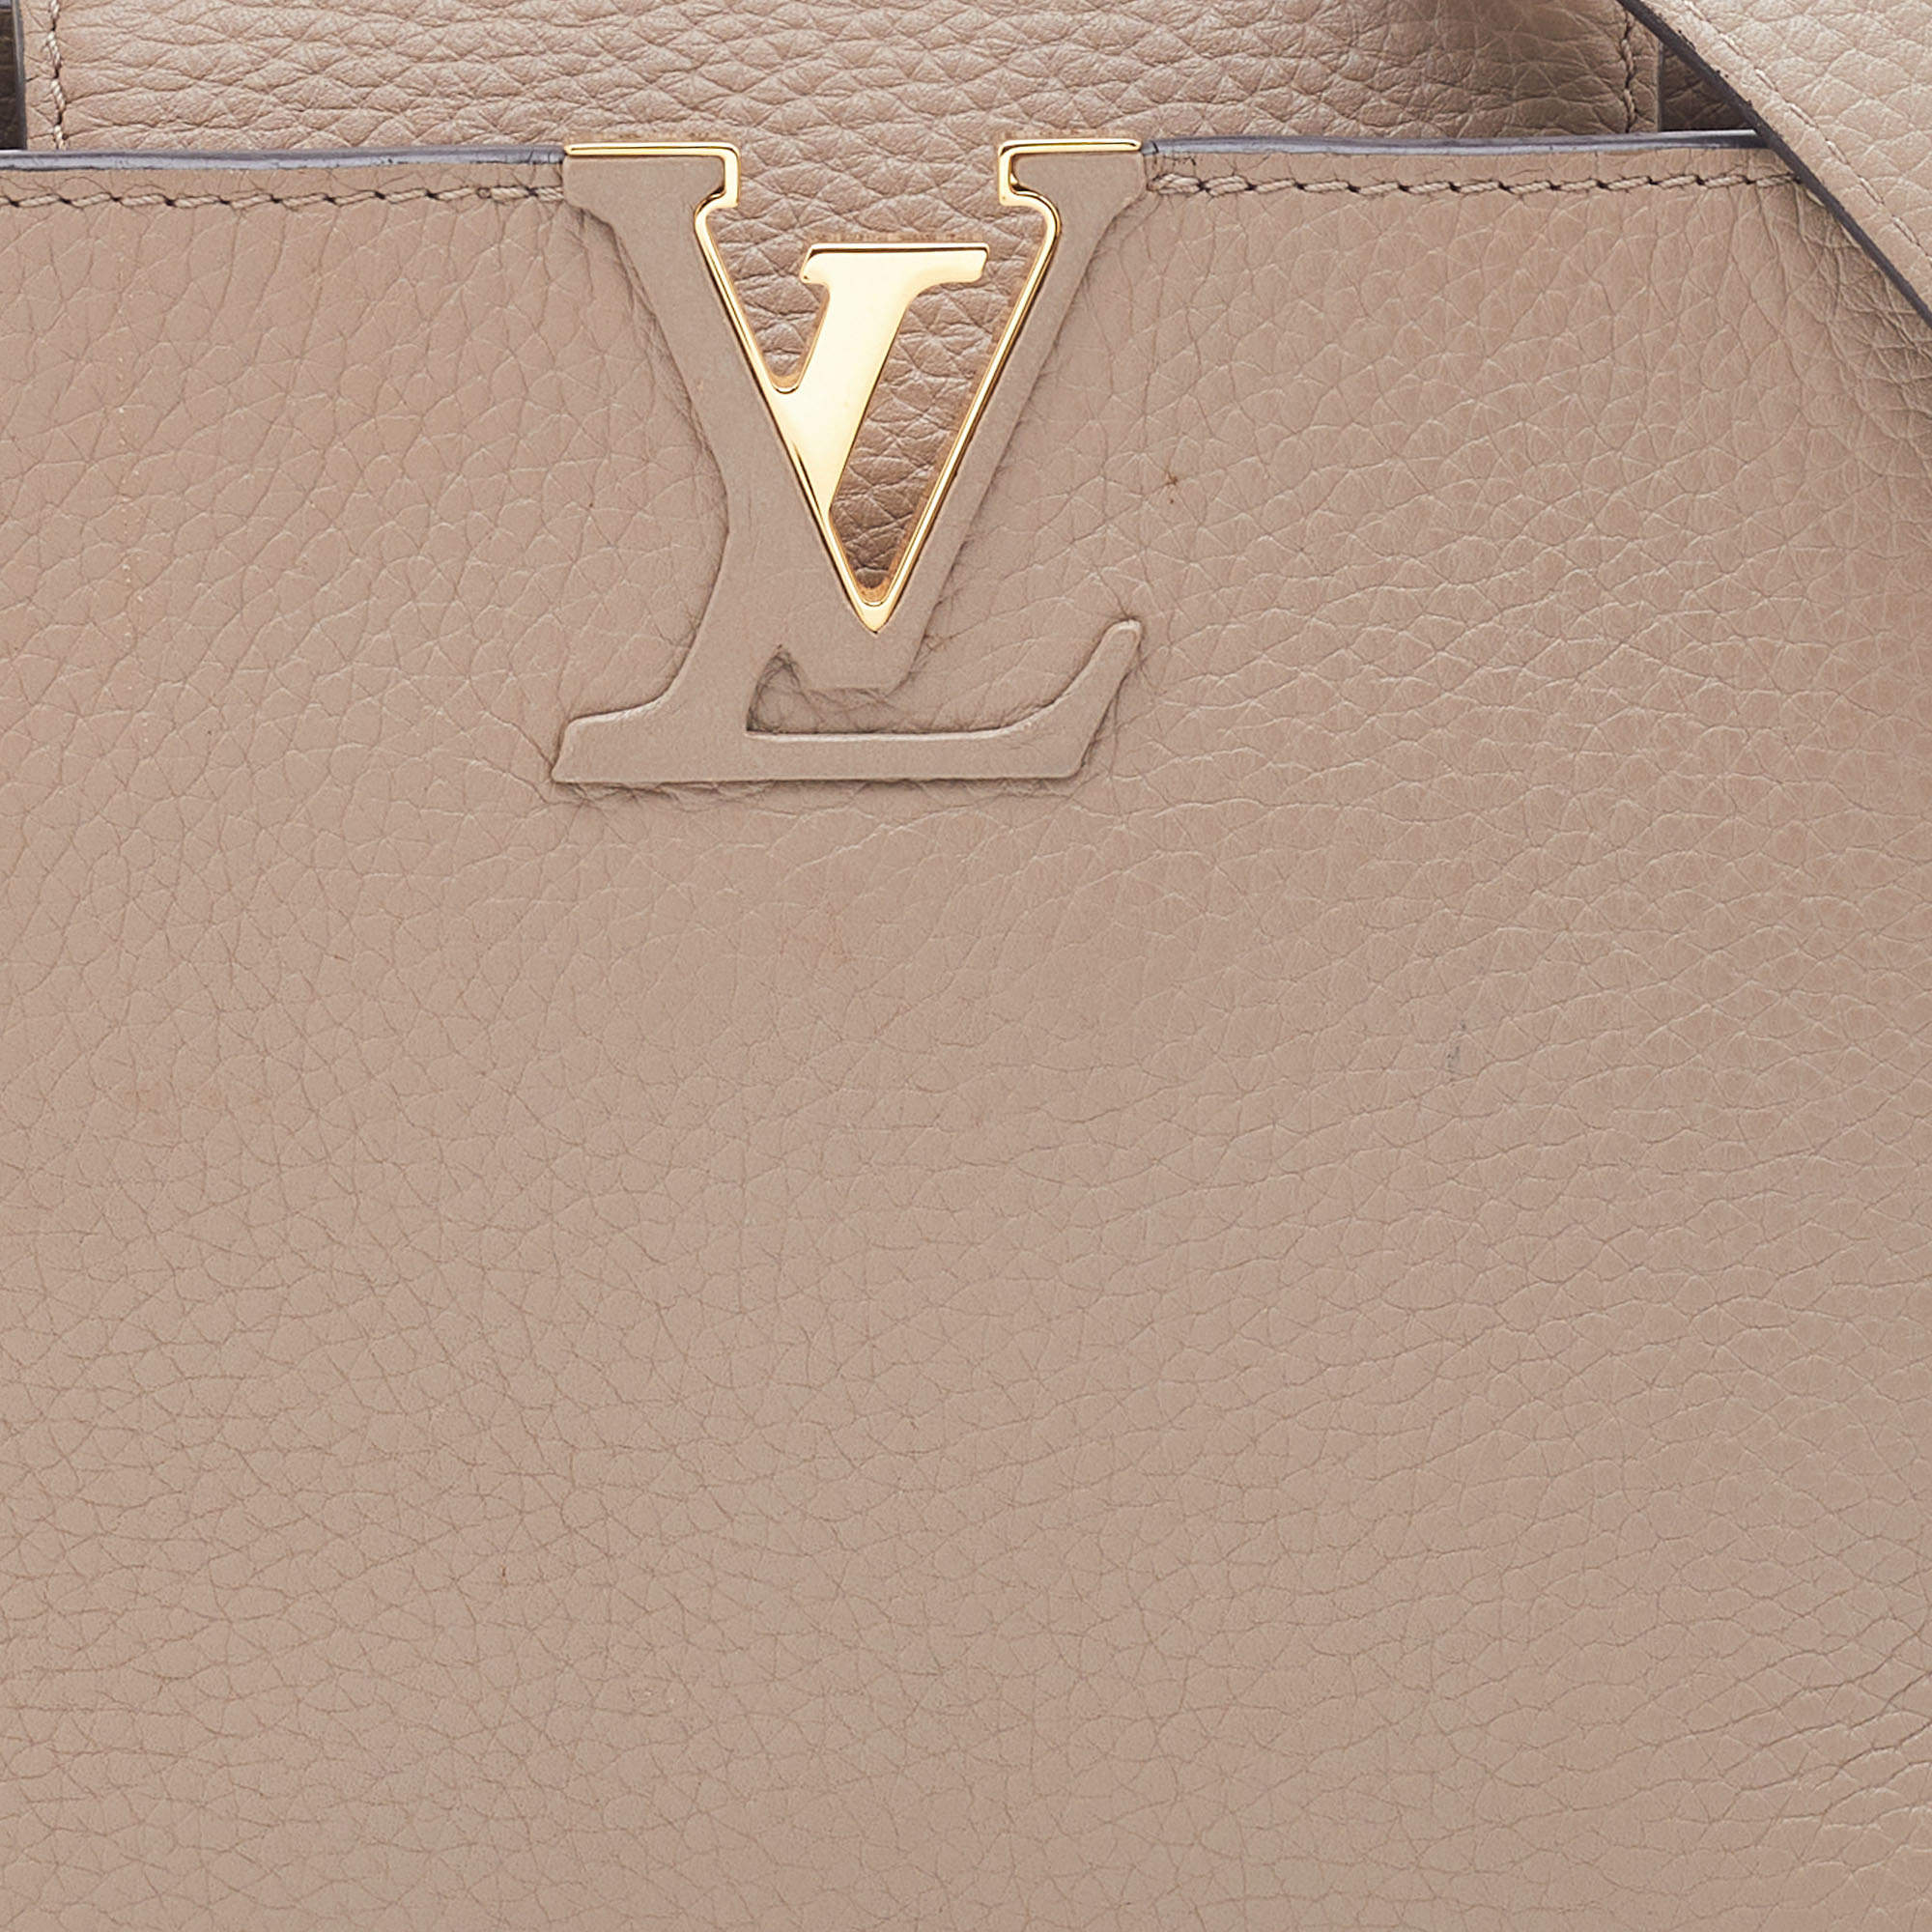 Louis Vuitton Capucines MM Bag Galet - THE PURSE AFFAIR